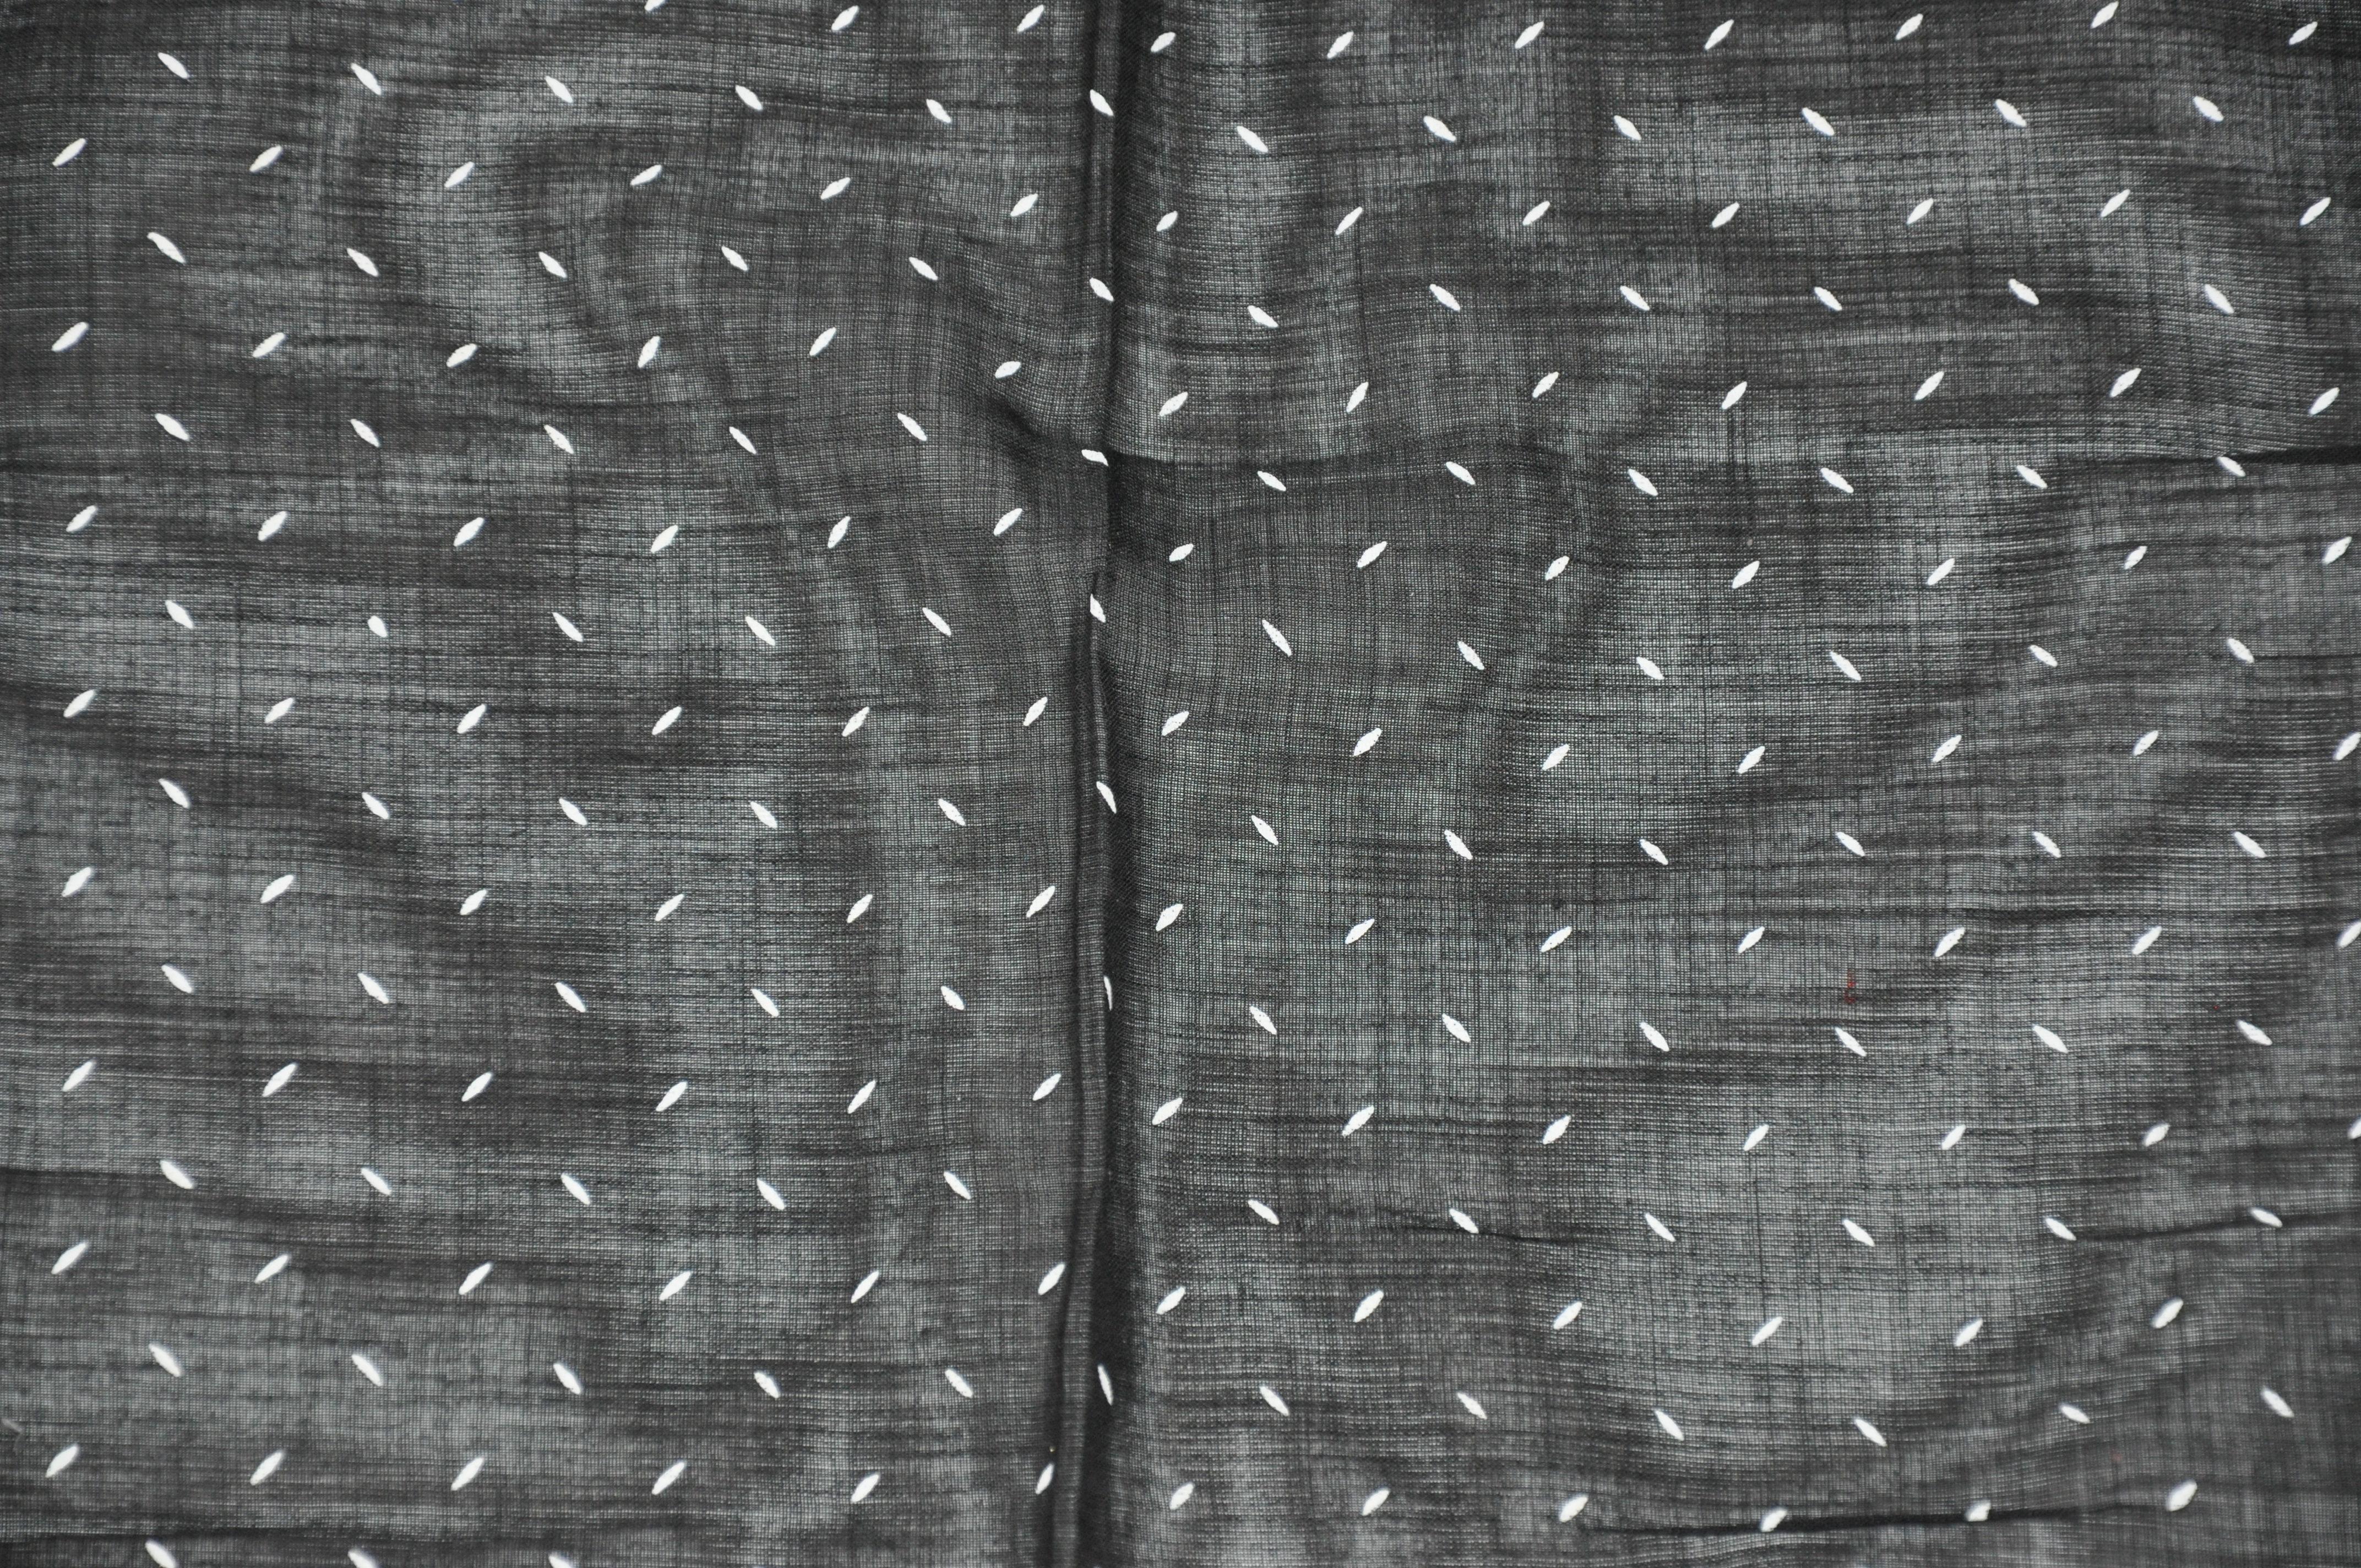        Ce mouchoir pour homme en coton noir minuit avec des bordures ivoires entourant des 